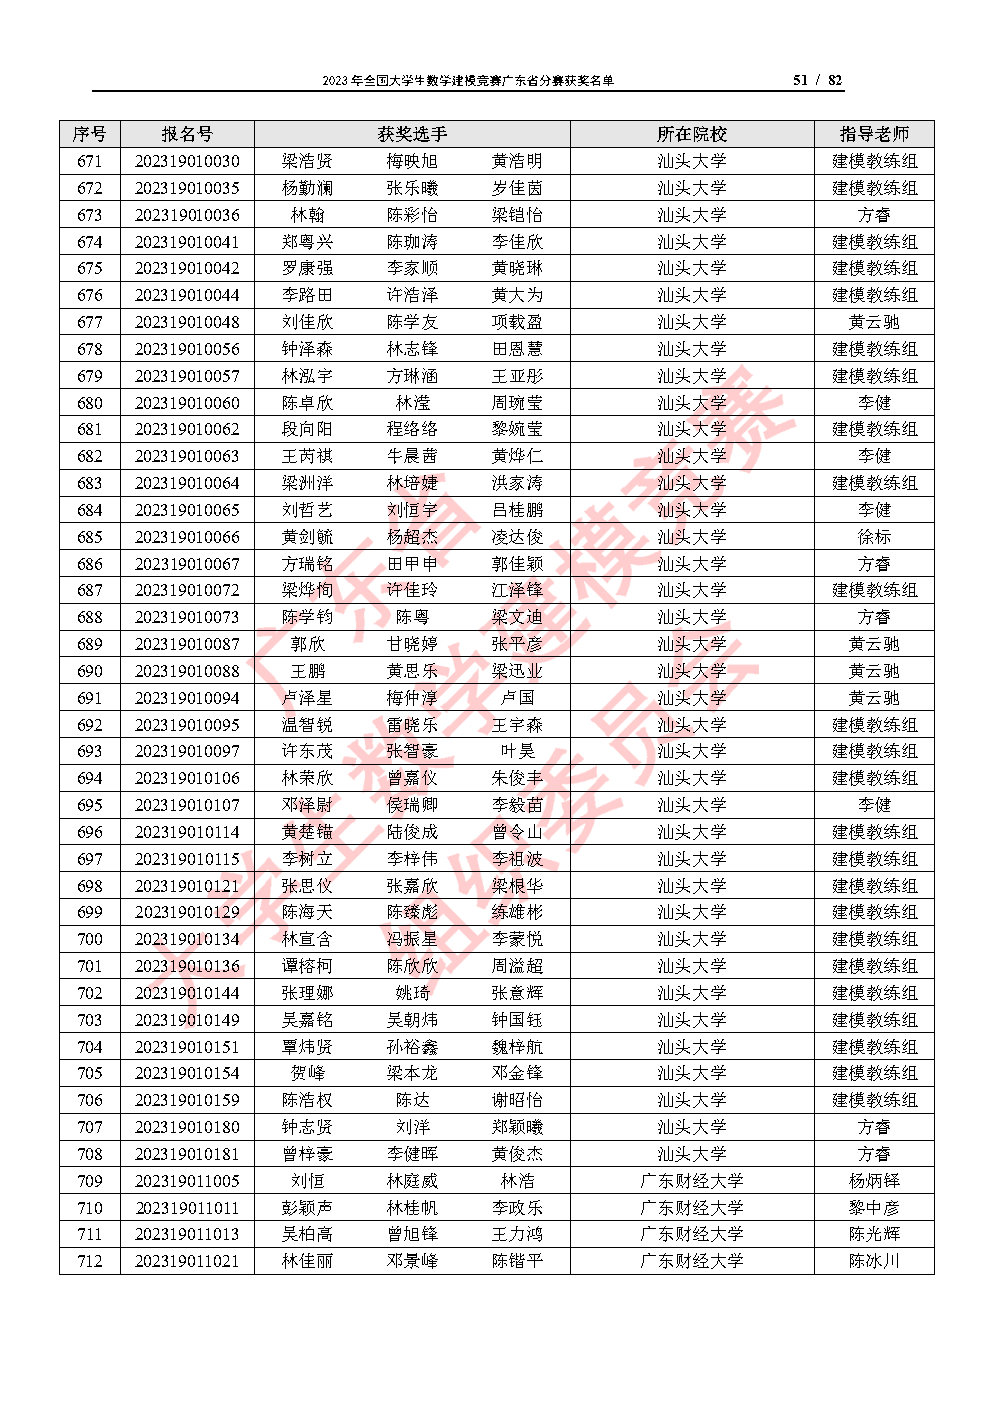 2023年全国大学生数学建模竞赛广东省分赛获奖名单_Page51.jpg